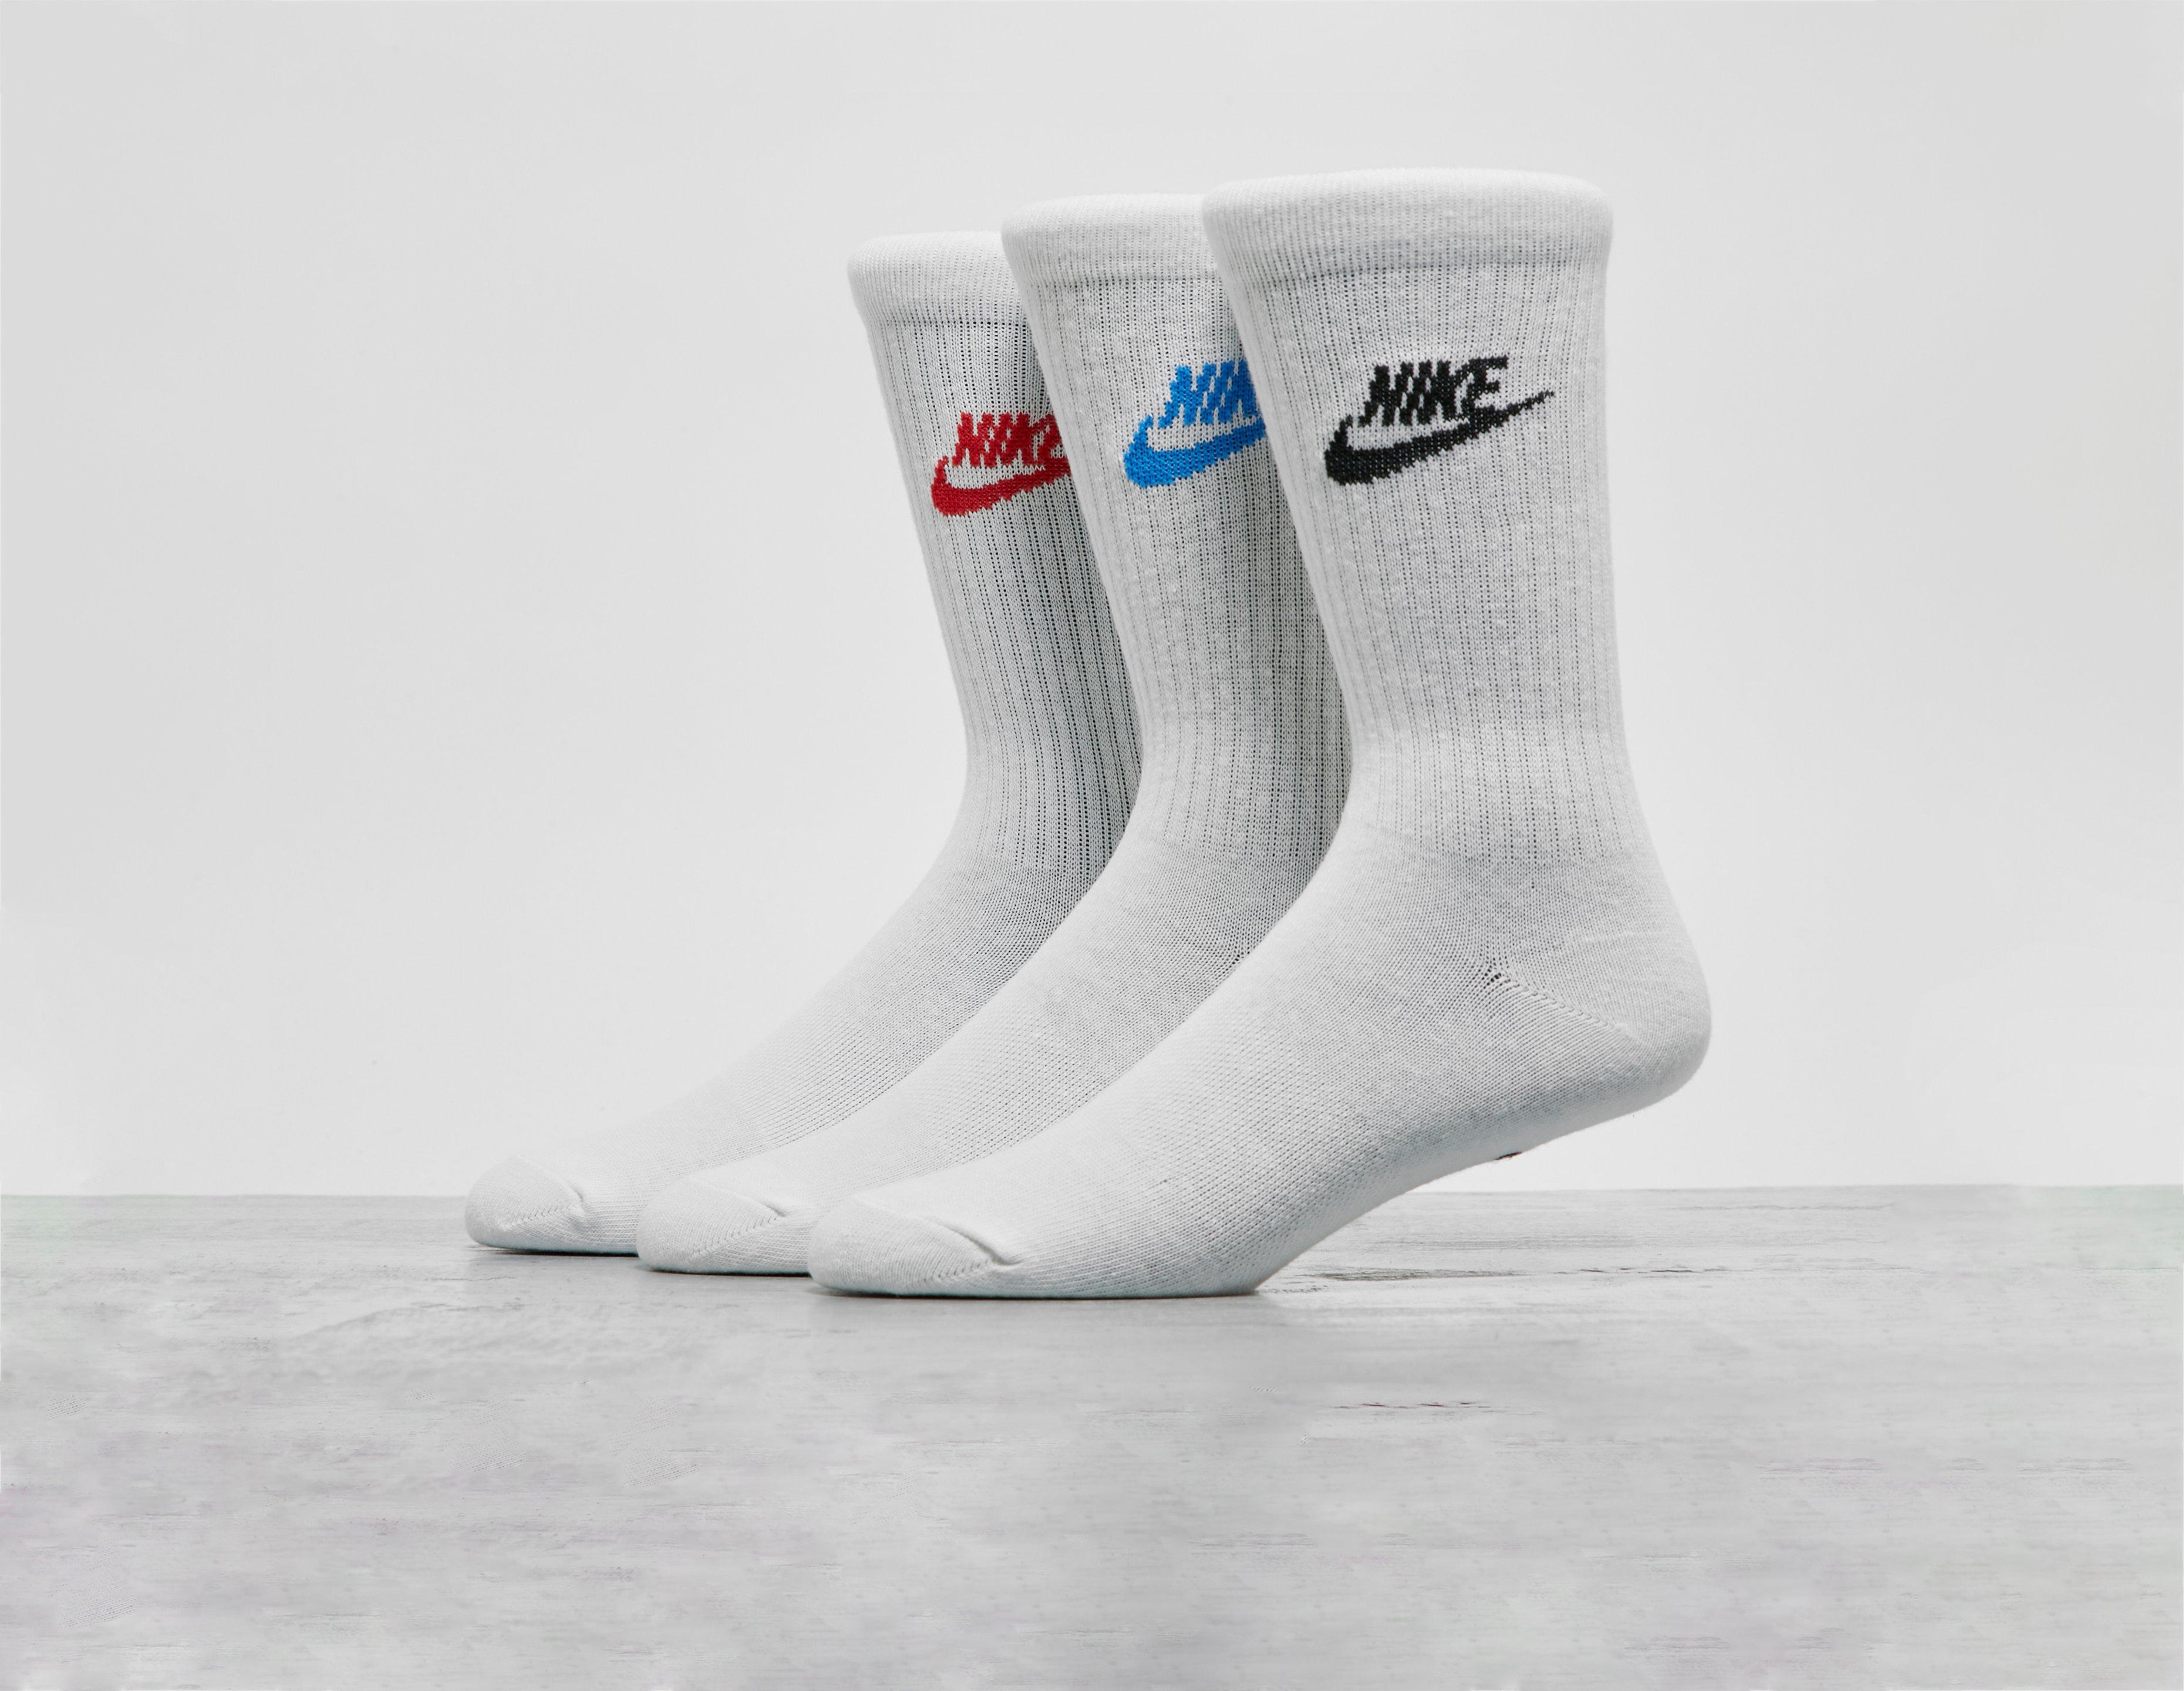 Lot de 3 paires de chaussettes Nike en blanc pour garçon (3-16 ans), Galeries Lafayette